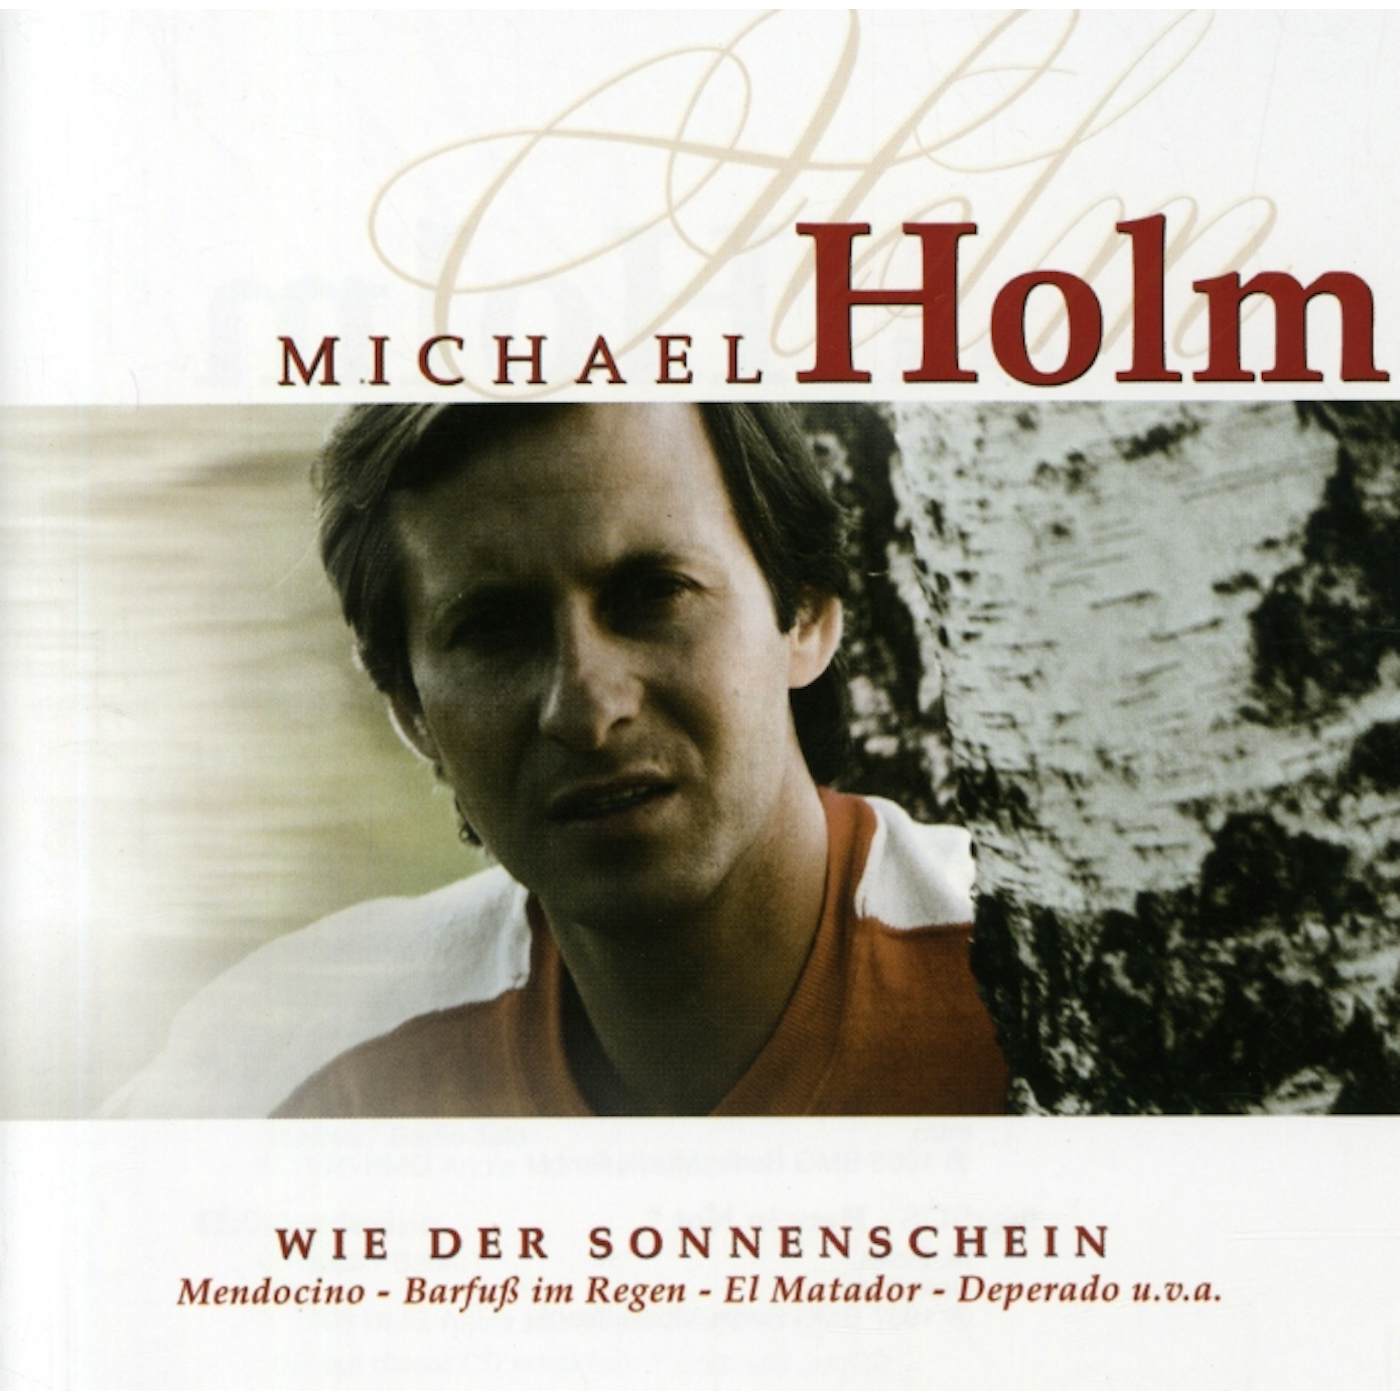 Michael Holm WIE DER SONNENSCHEIN CD